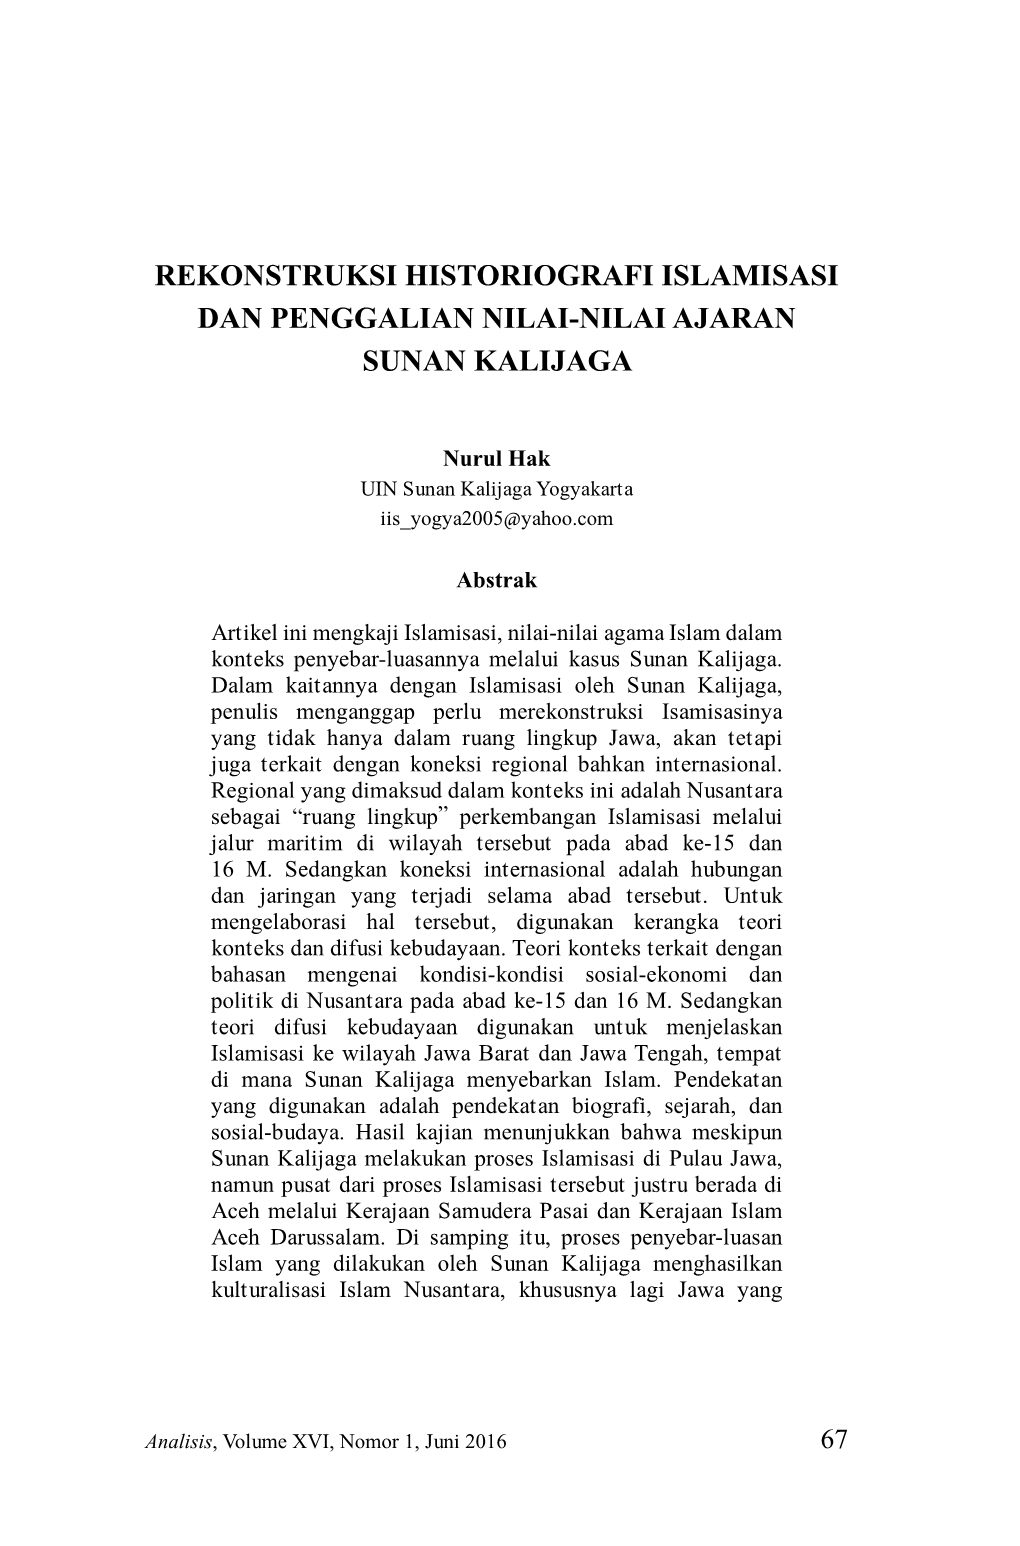 Rekonstruksi Historiografi Islamisasi Dan Penggalian Nilai-Nilai Ajaran Sunan Kalijaga